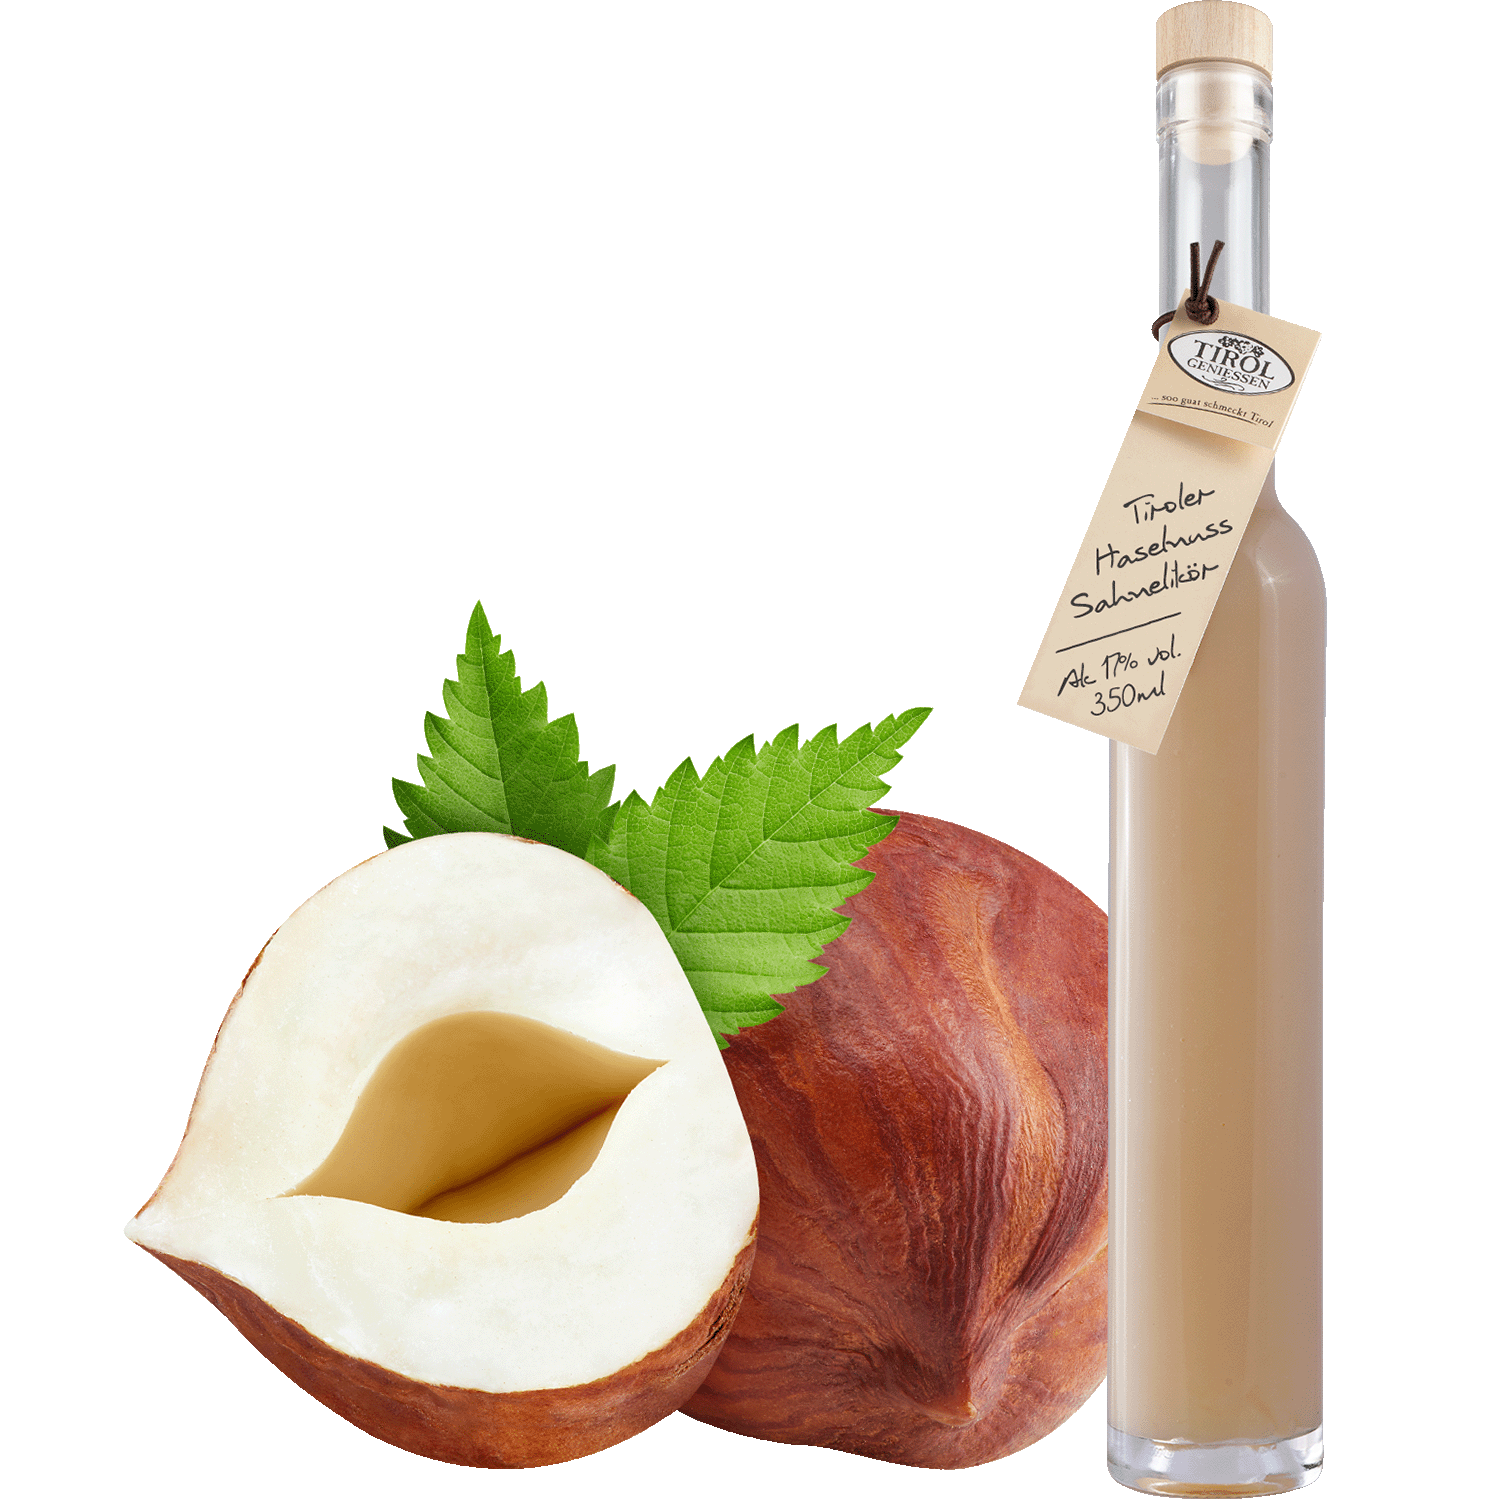 Hazelnut Cream Liqueur in gift bottle from Austria from Tirol Geniessen